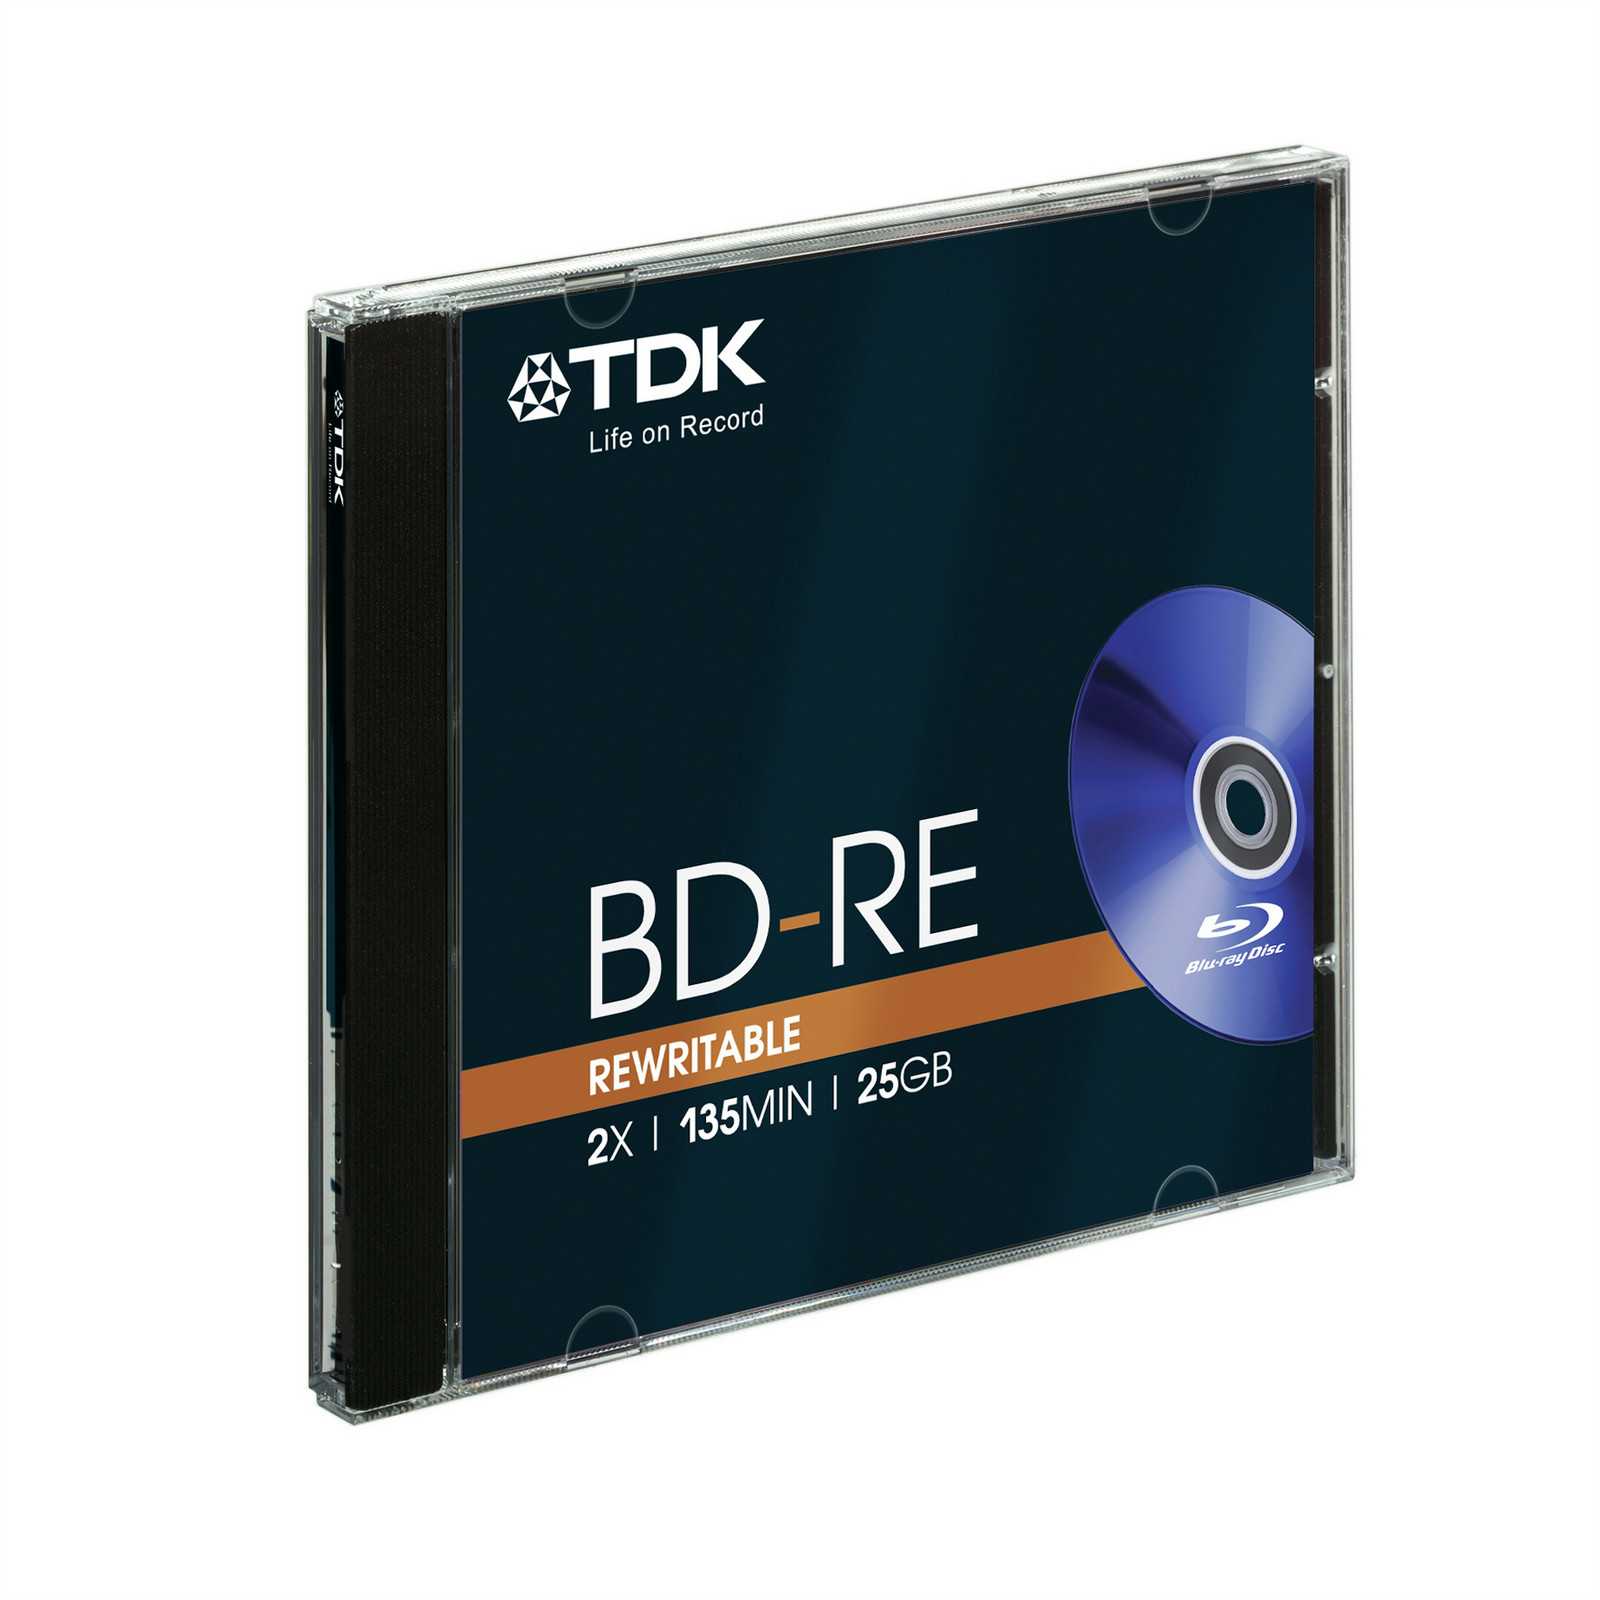 Tdk eb950 купить - санкт-петербург по акционной цене , отзывы и обзоры.